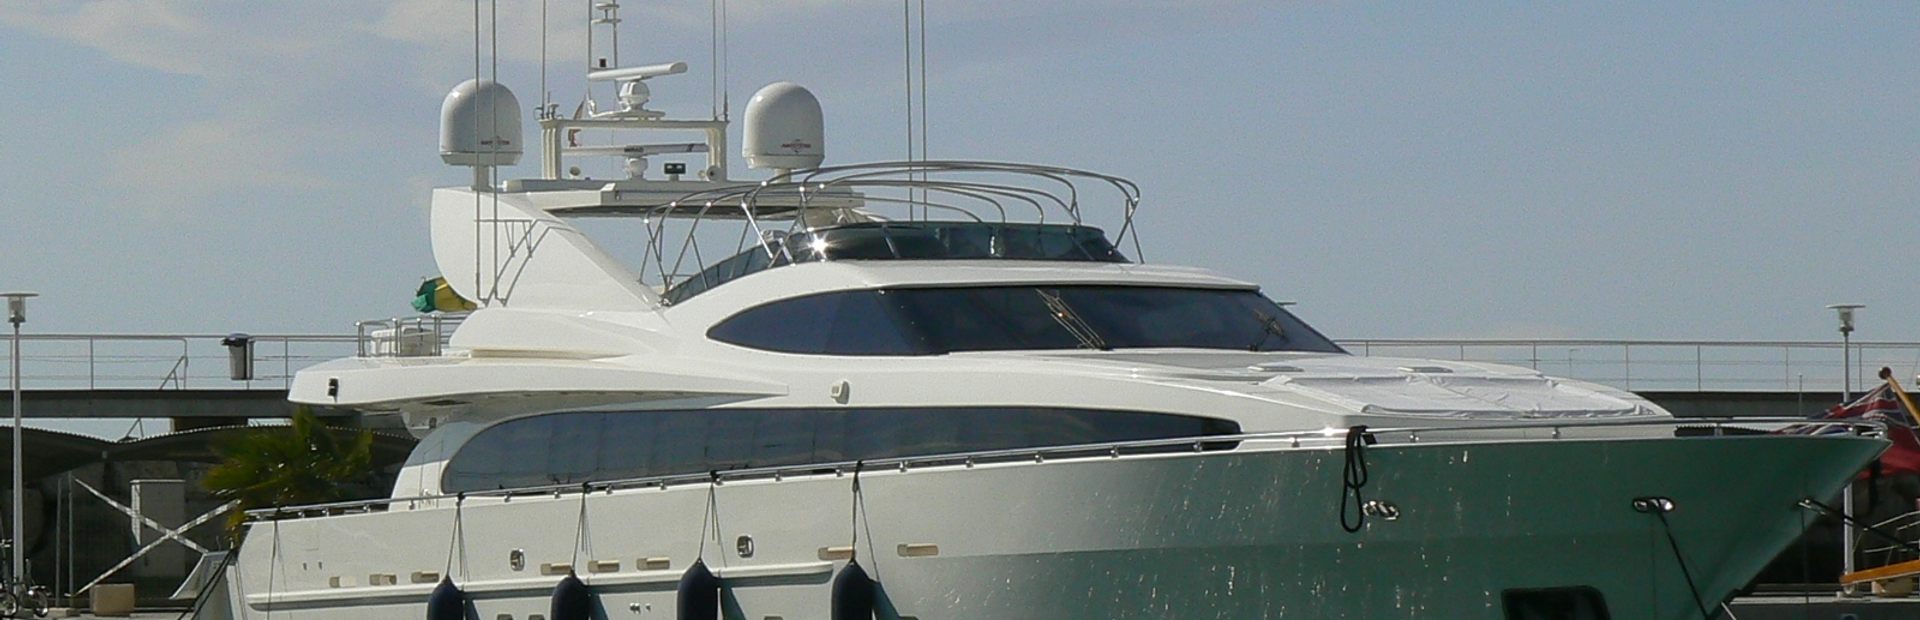 114 GLX Yacht